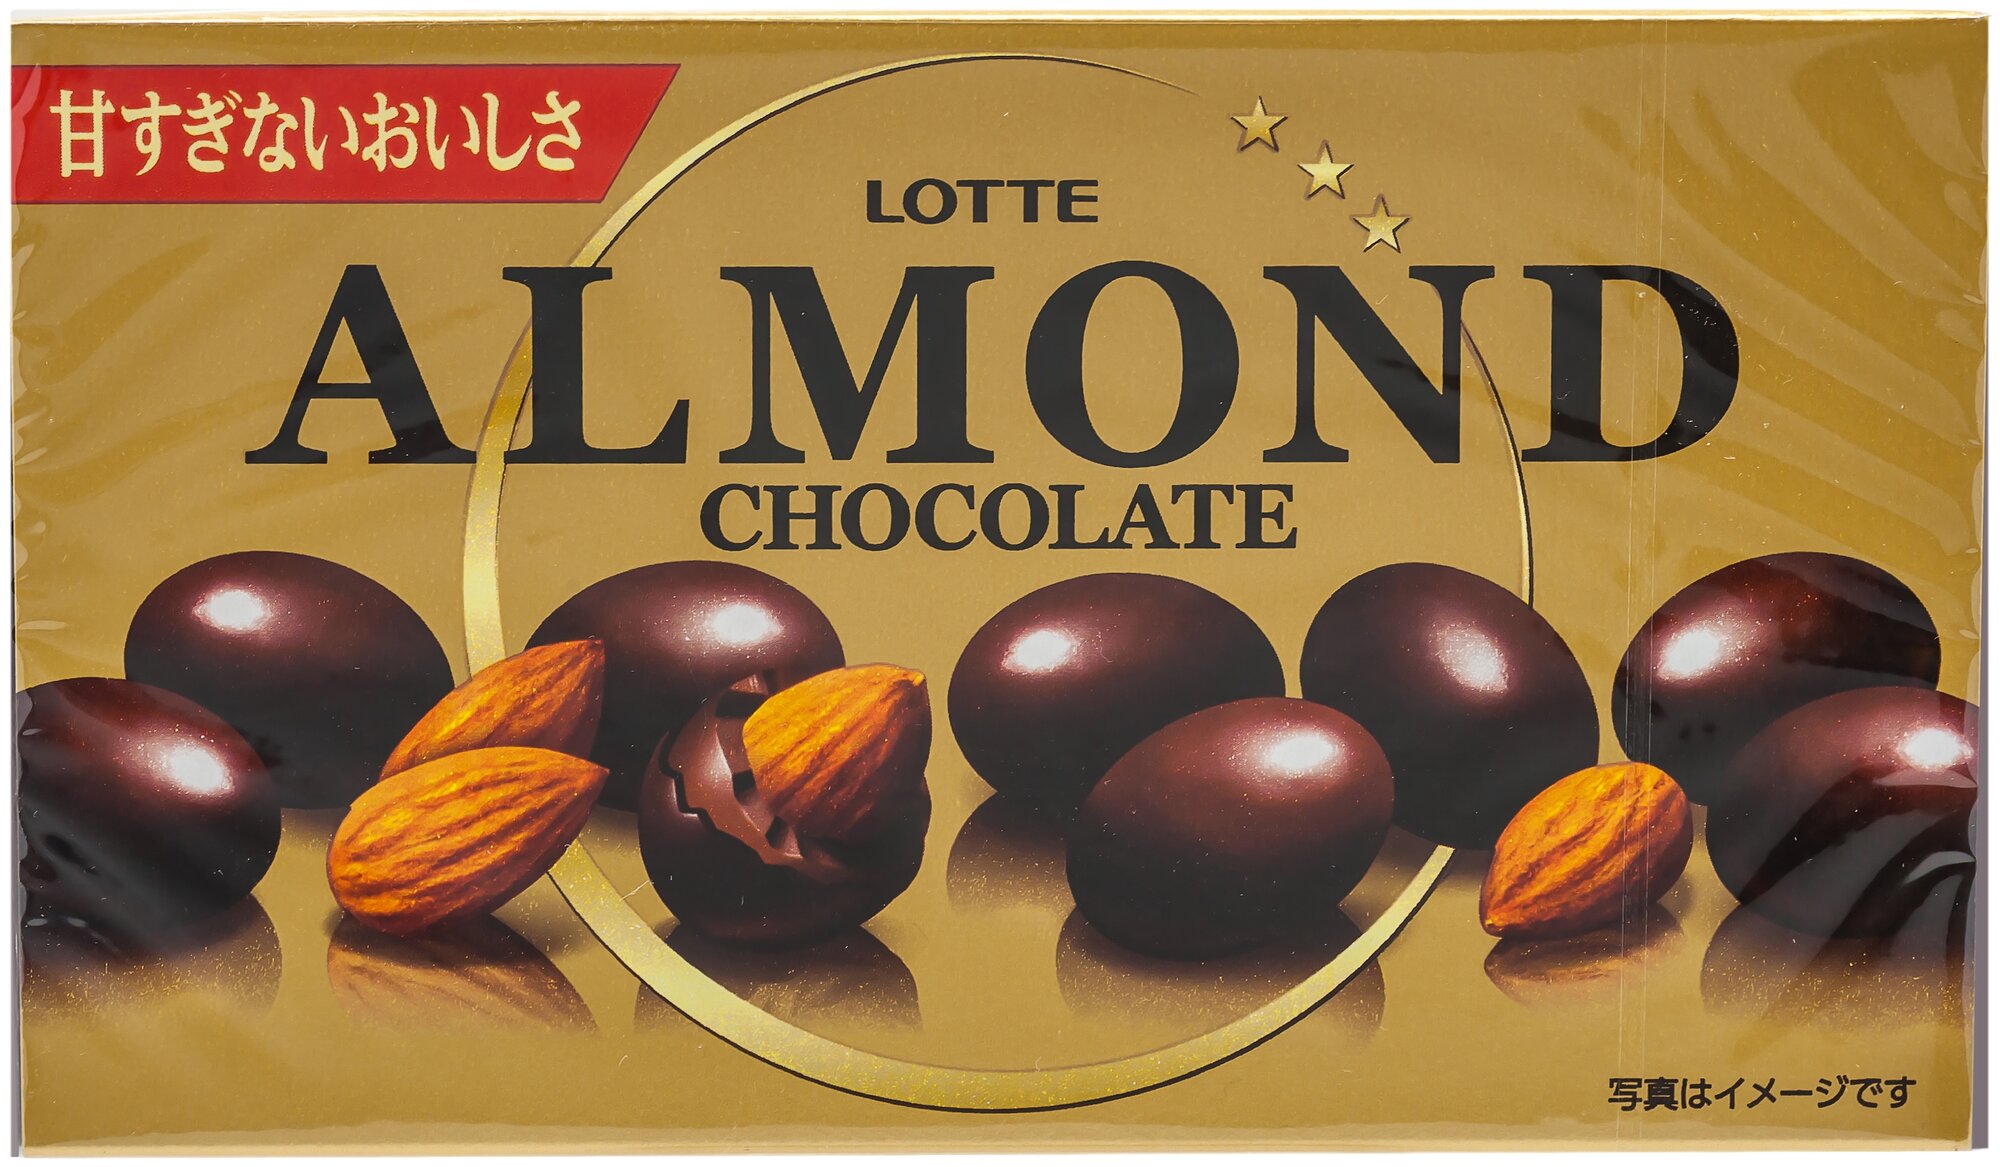 Lotte ALMOND Целый Миндаль в молочном шоколаде, картонная коробка, 86 гр. Япония